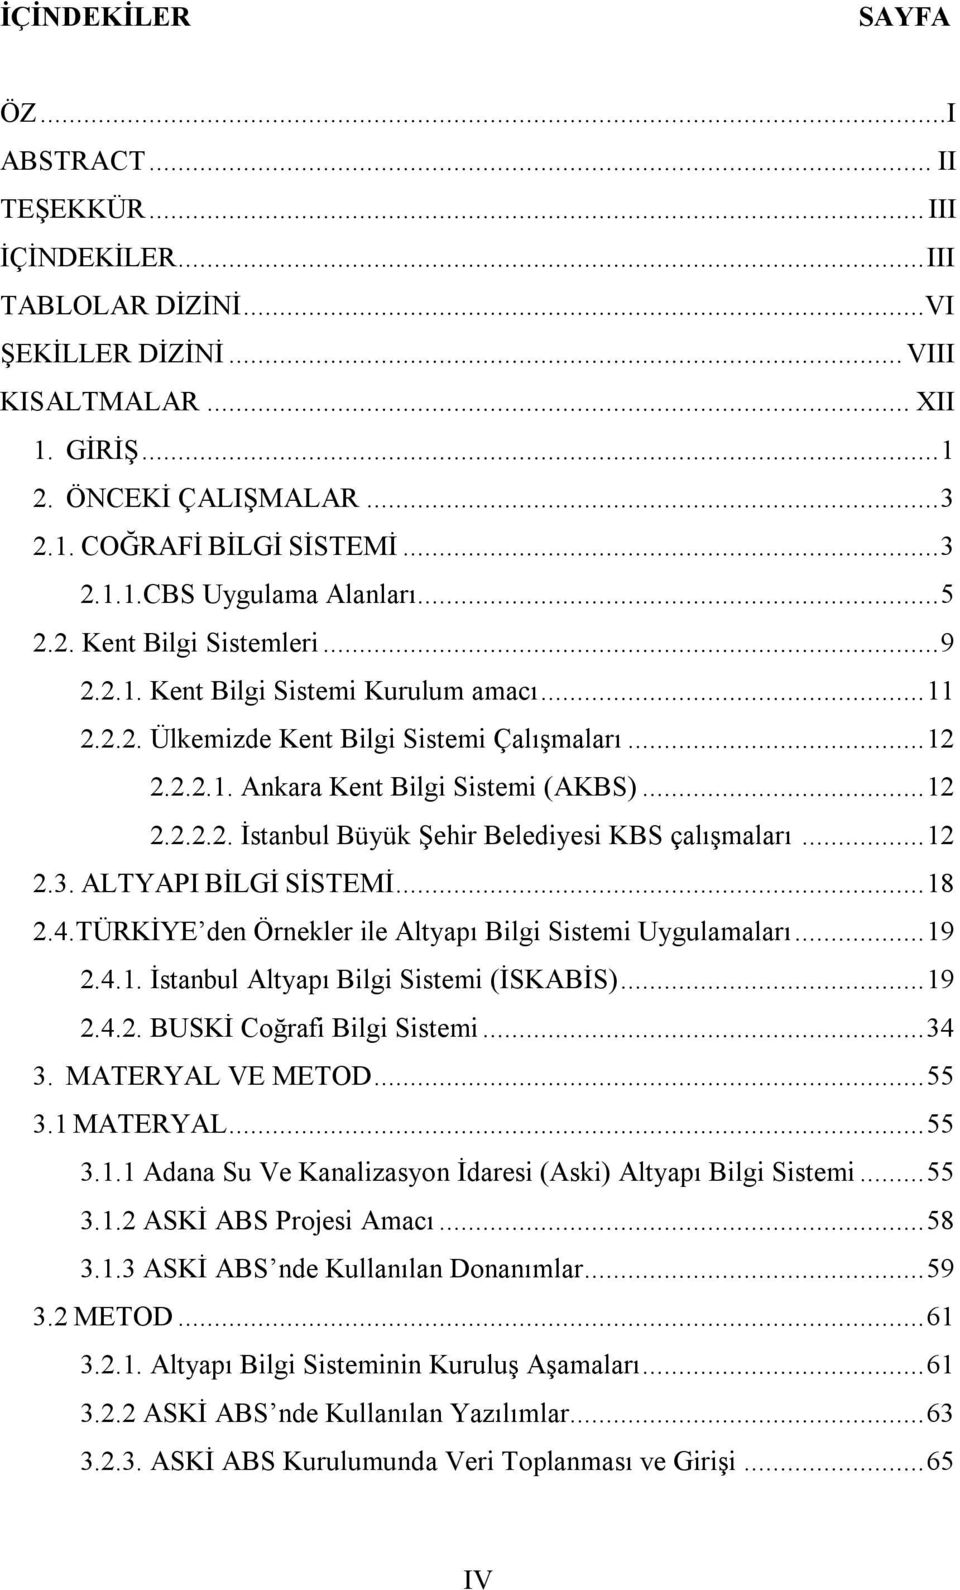 .. 12 2.2.2.2. İstanbul Büyük Şehir Belediyesi KBS çalışmaları... 12 2.3. ALTYAPI BİLGİ SİSTEMİ... 18 2.4.TÜRKİYE den Örnekler ile Altyapı Bilgi Sistemi Uygulamaları... 19 2.4.1. İstanbul Altyapı Bilgi Sistemi (İSKABİS).